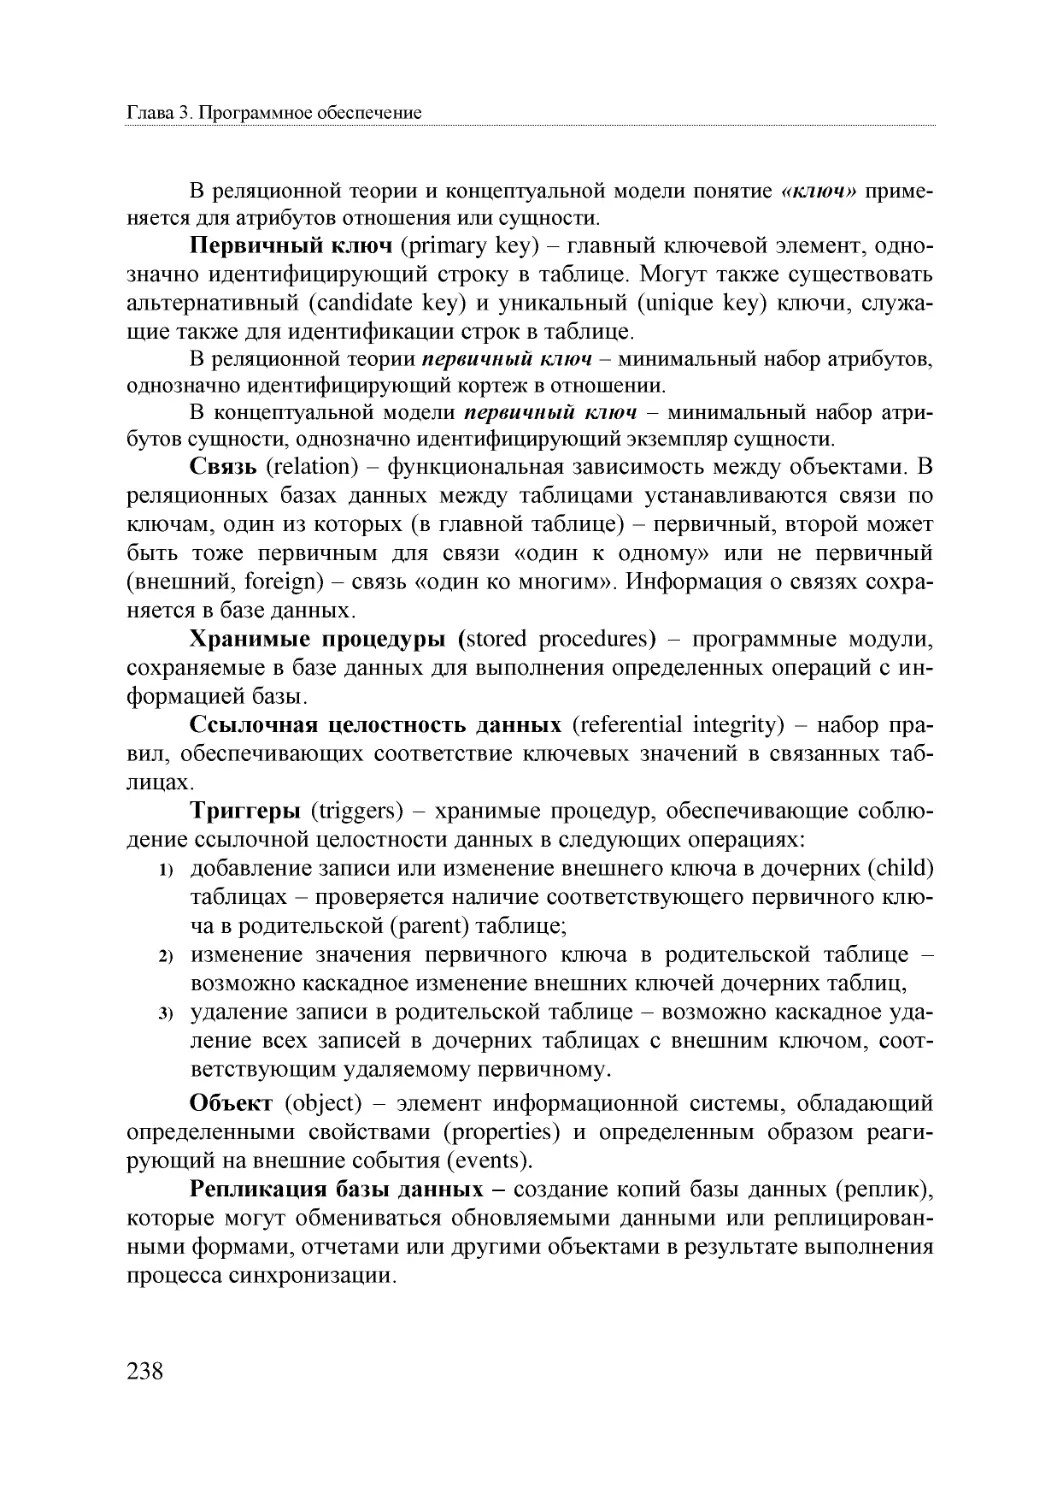 Informatika_Uchebnik_dlya_vuzov_2010 238